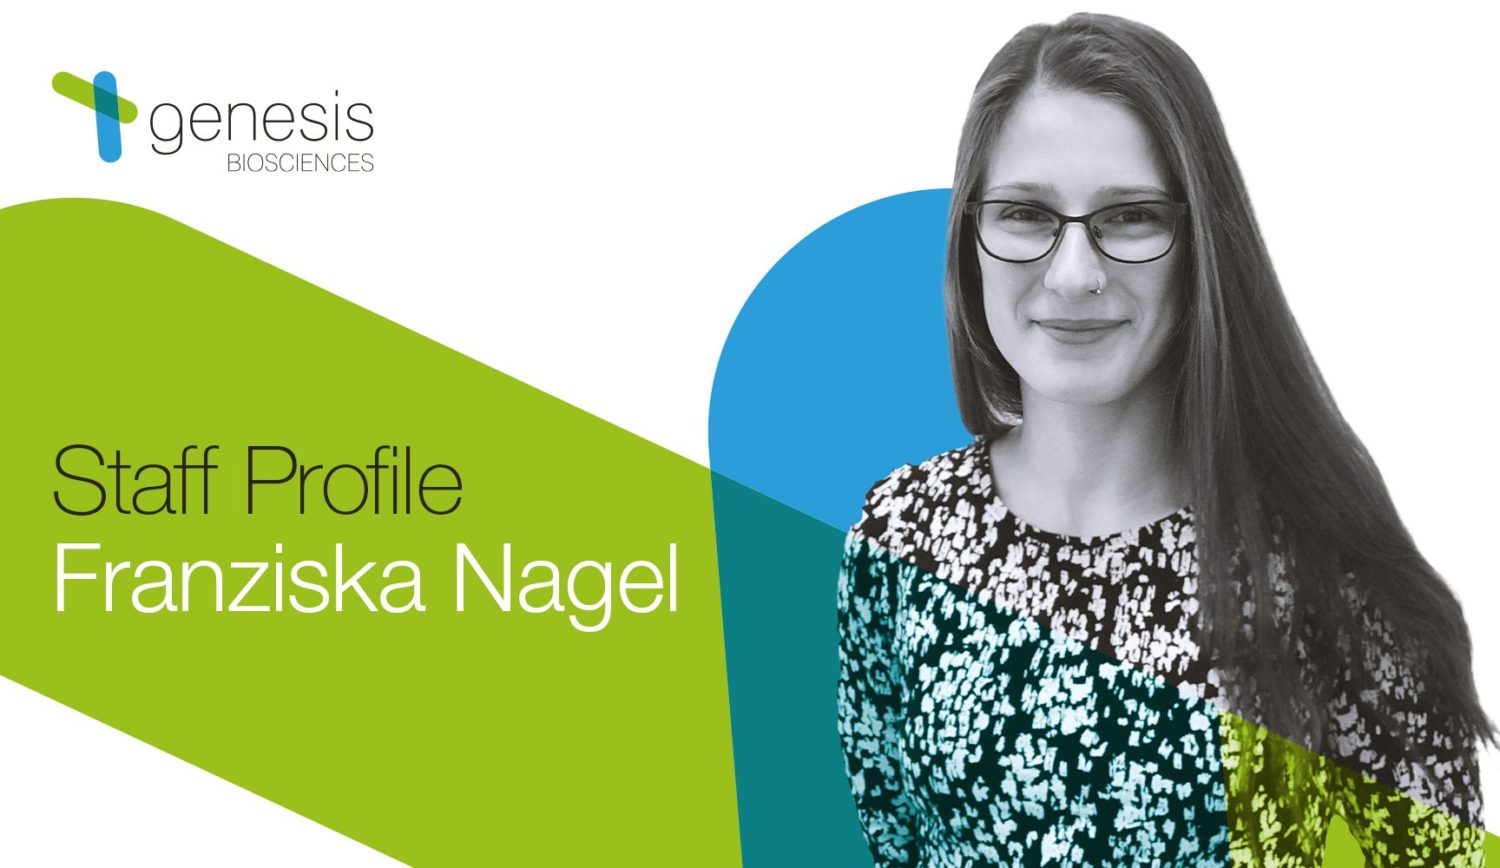 Staff Profile: Franziska Nagel, R&D Scientist